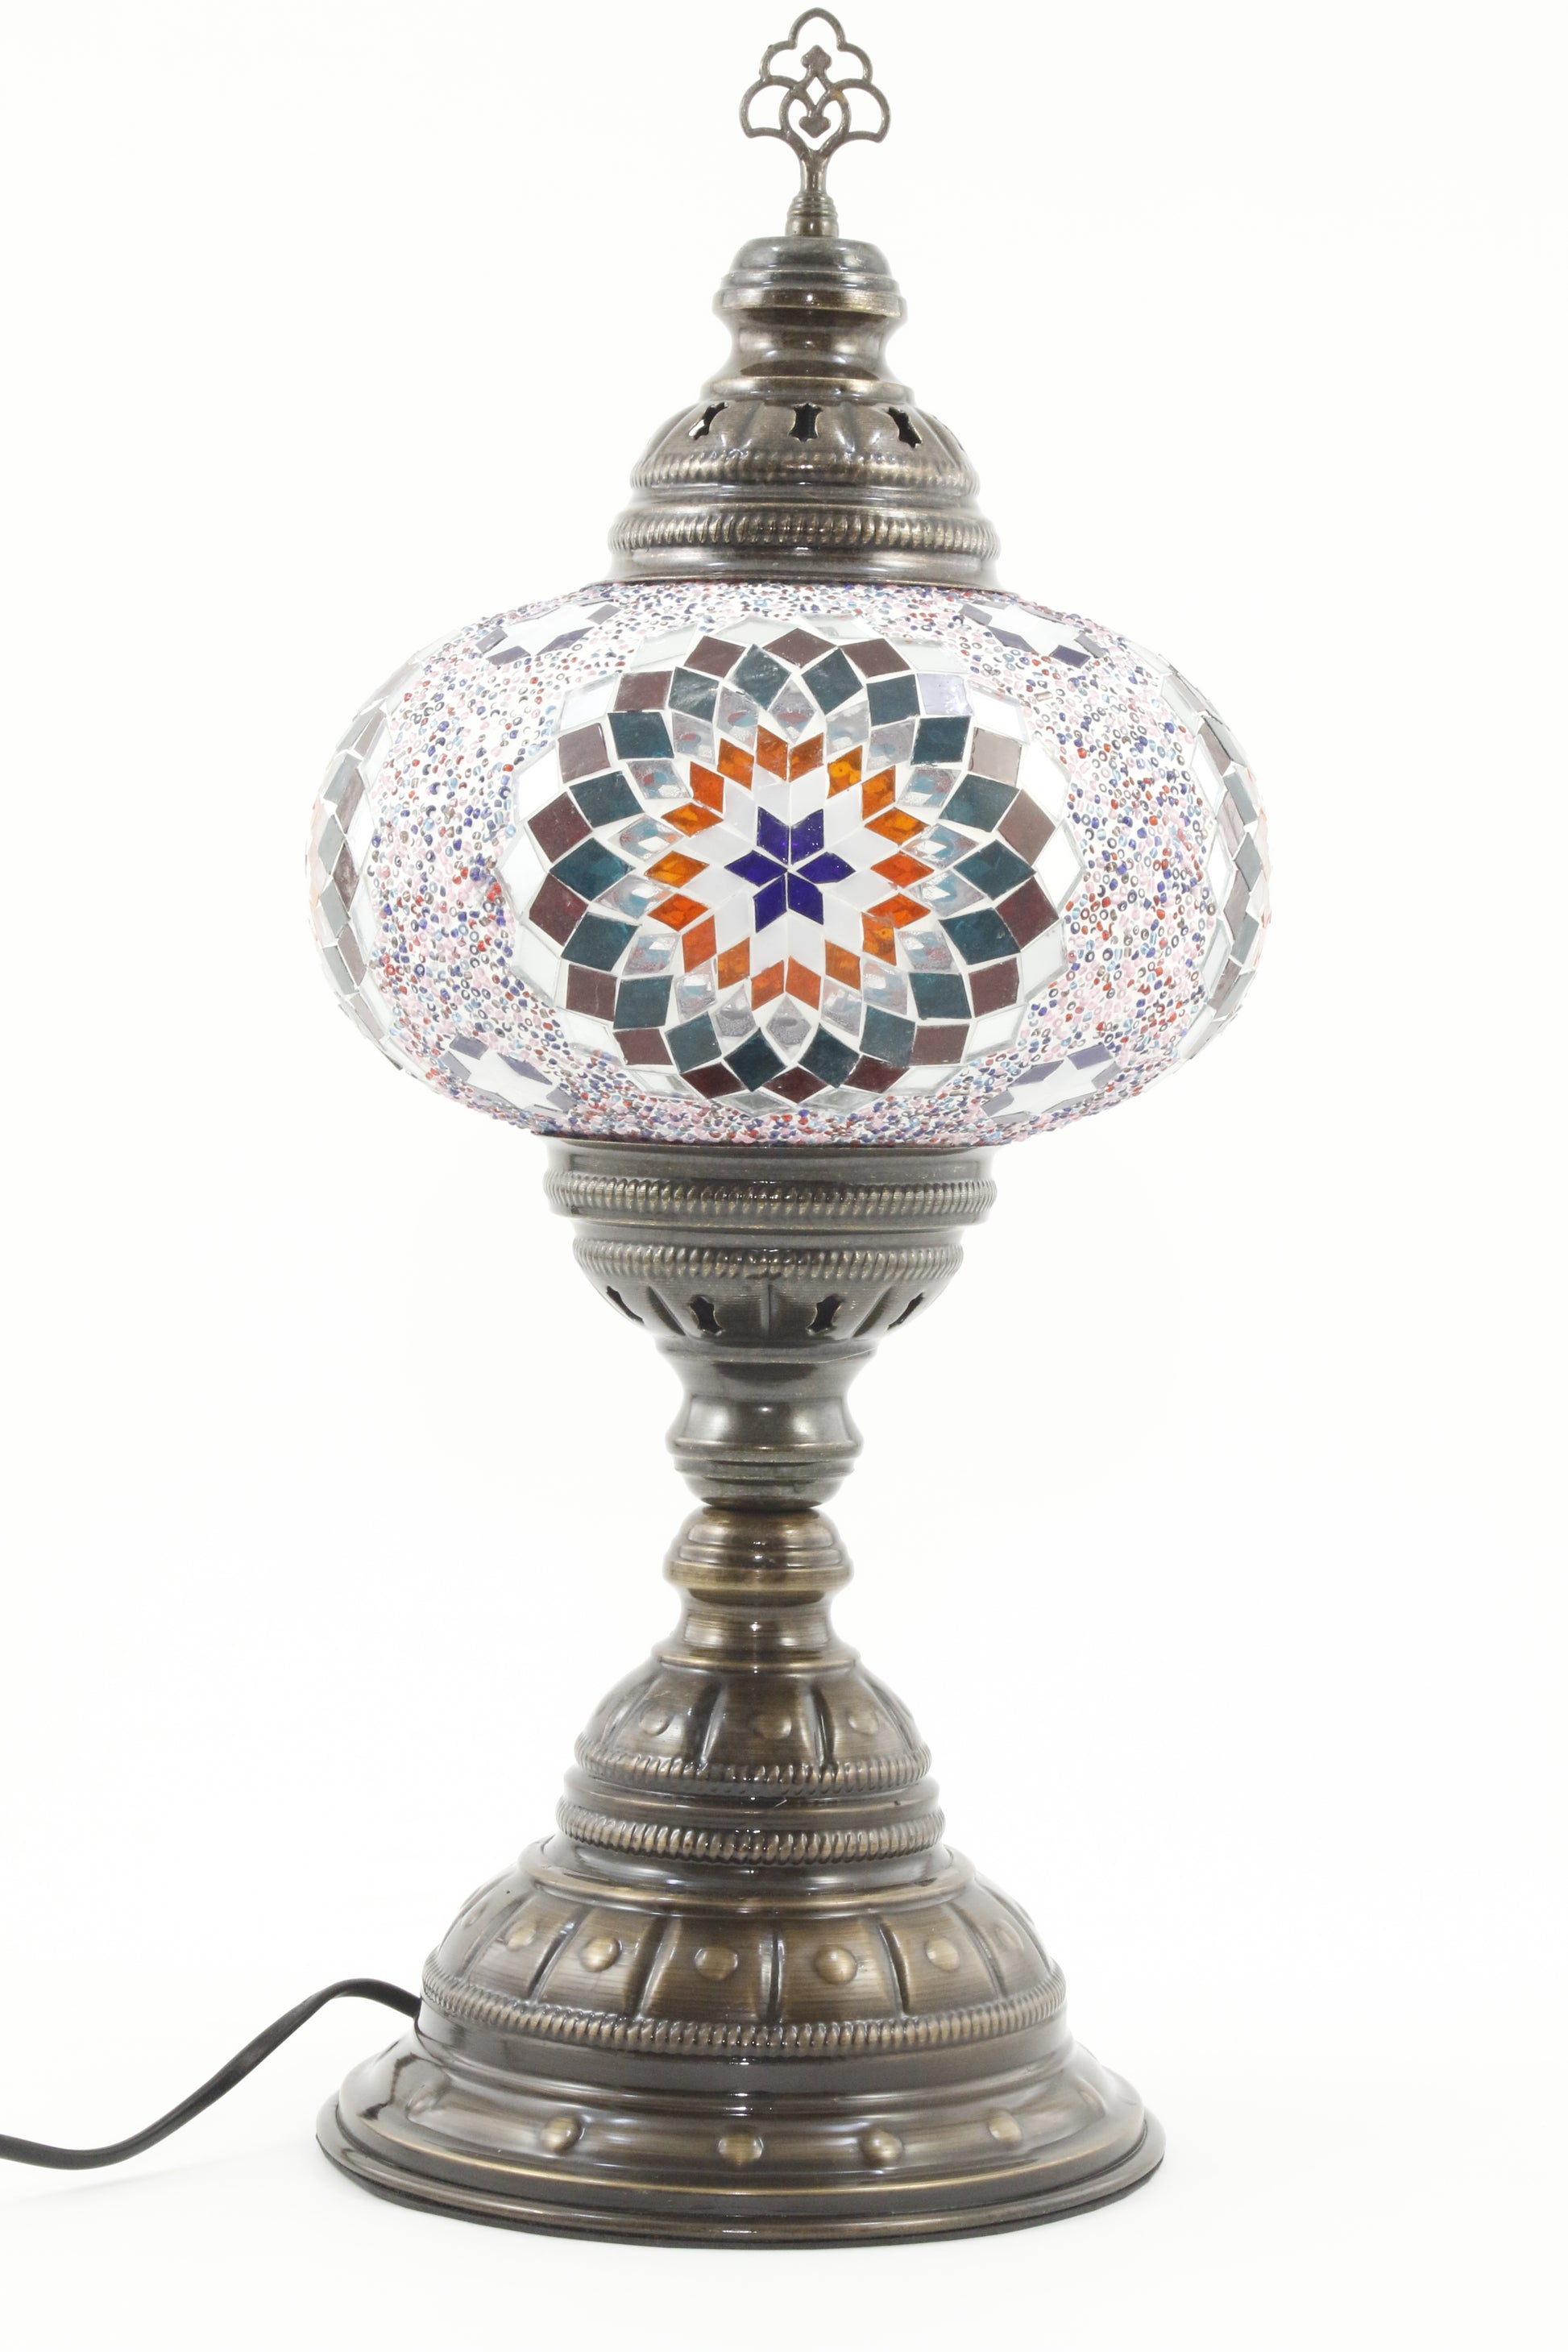 TURKISH MOSAIC TABLE LAMP MB4 RAINBOW 3-TURNED OFF